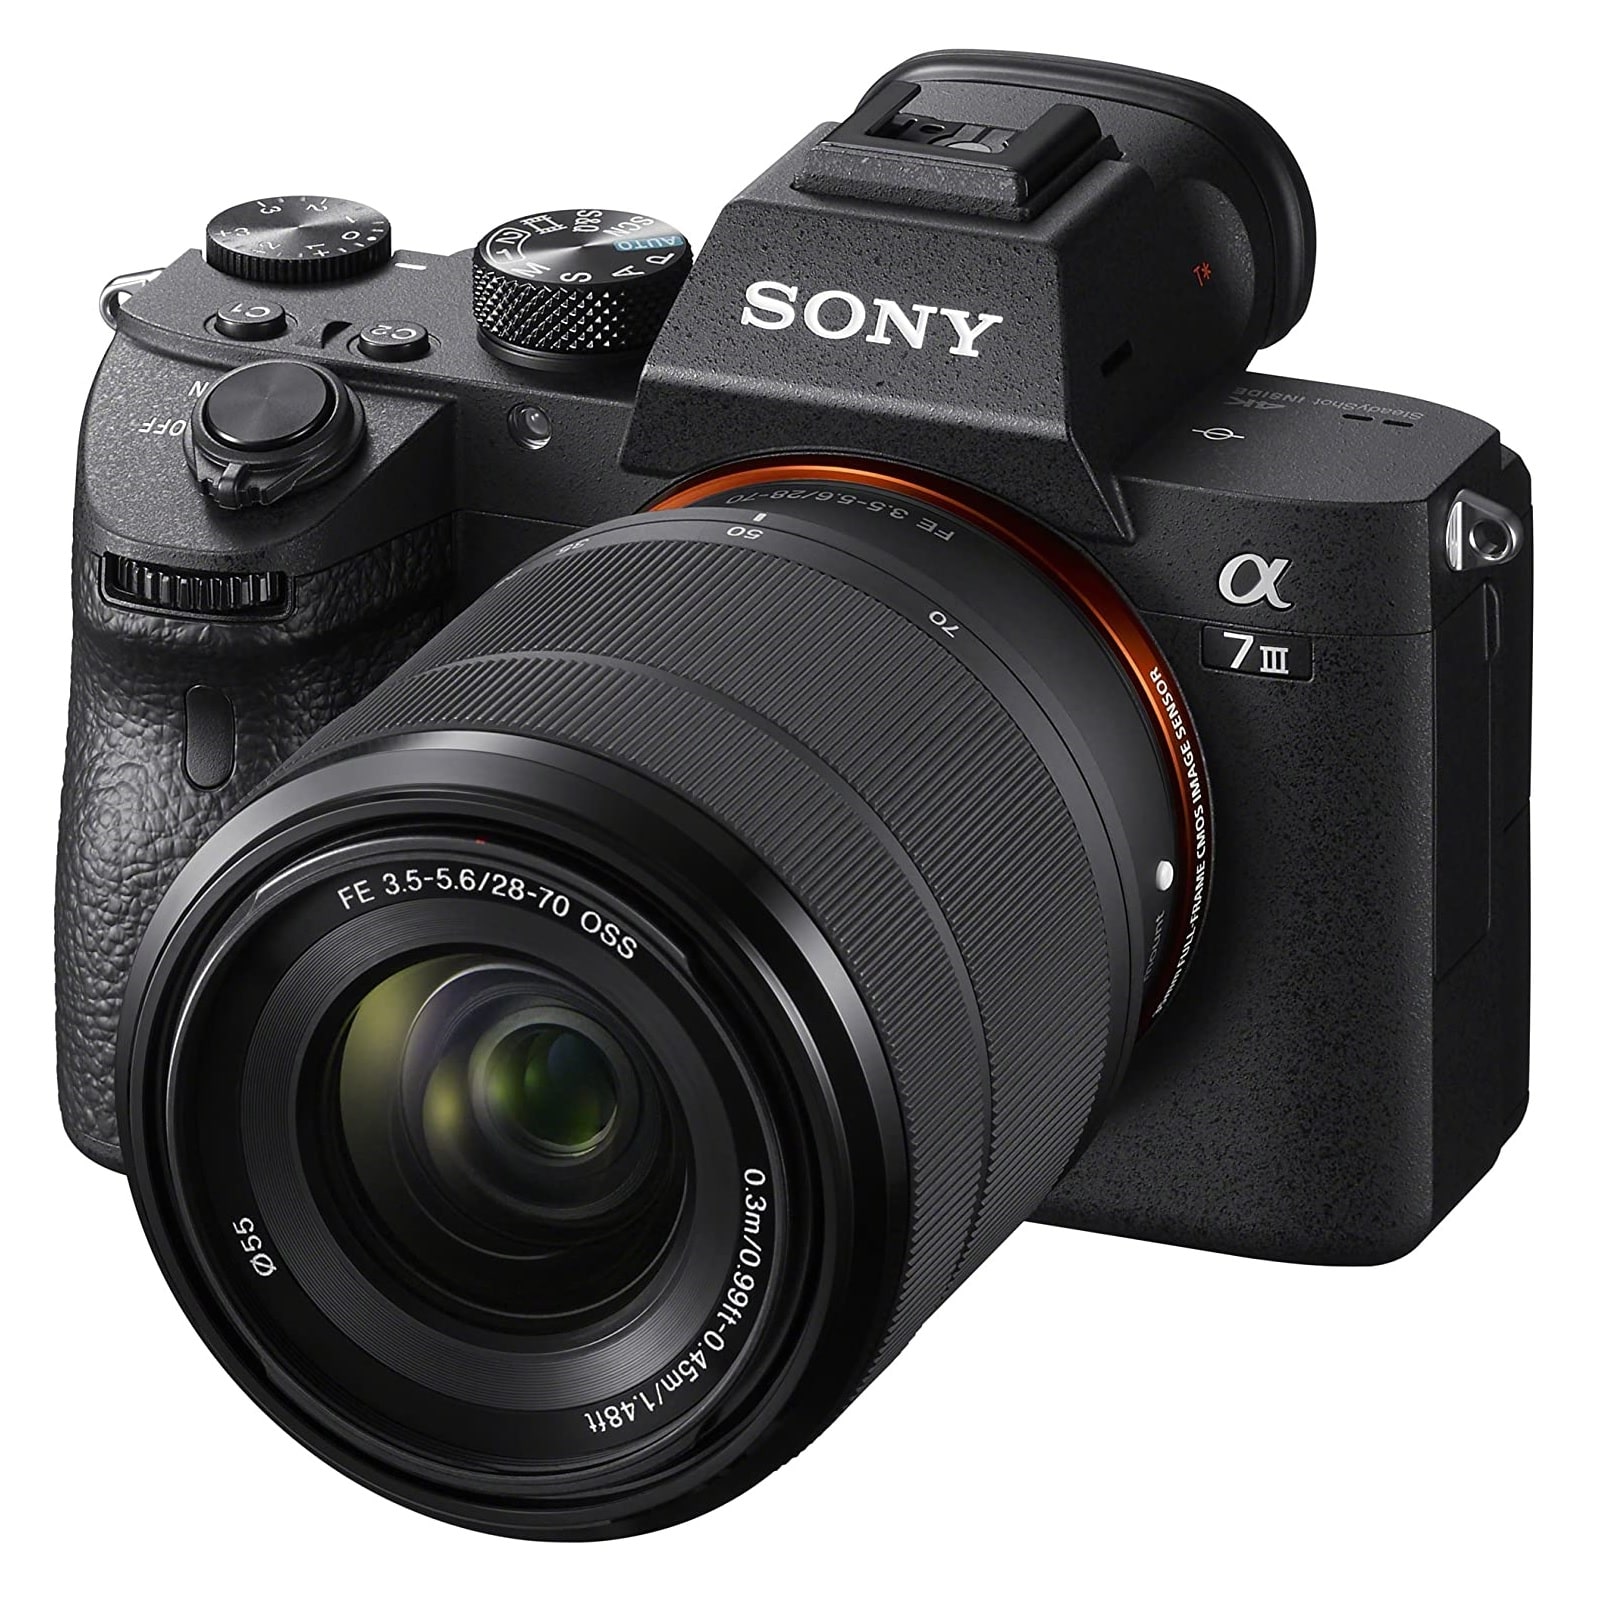 Беззеркальный фотоаппарат Sony Alpha A7 Mark III, 28-70mm, f/3.5-5.6, черный для sony xperia 10 iii закаленное стекло xperia 5 iii защита для экрана твердость 9h защита экрана для sony xperia 1 iii